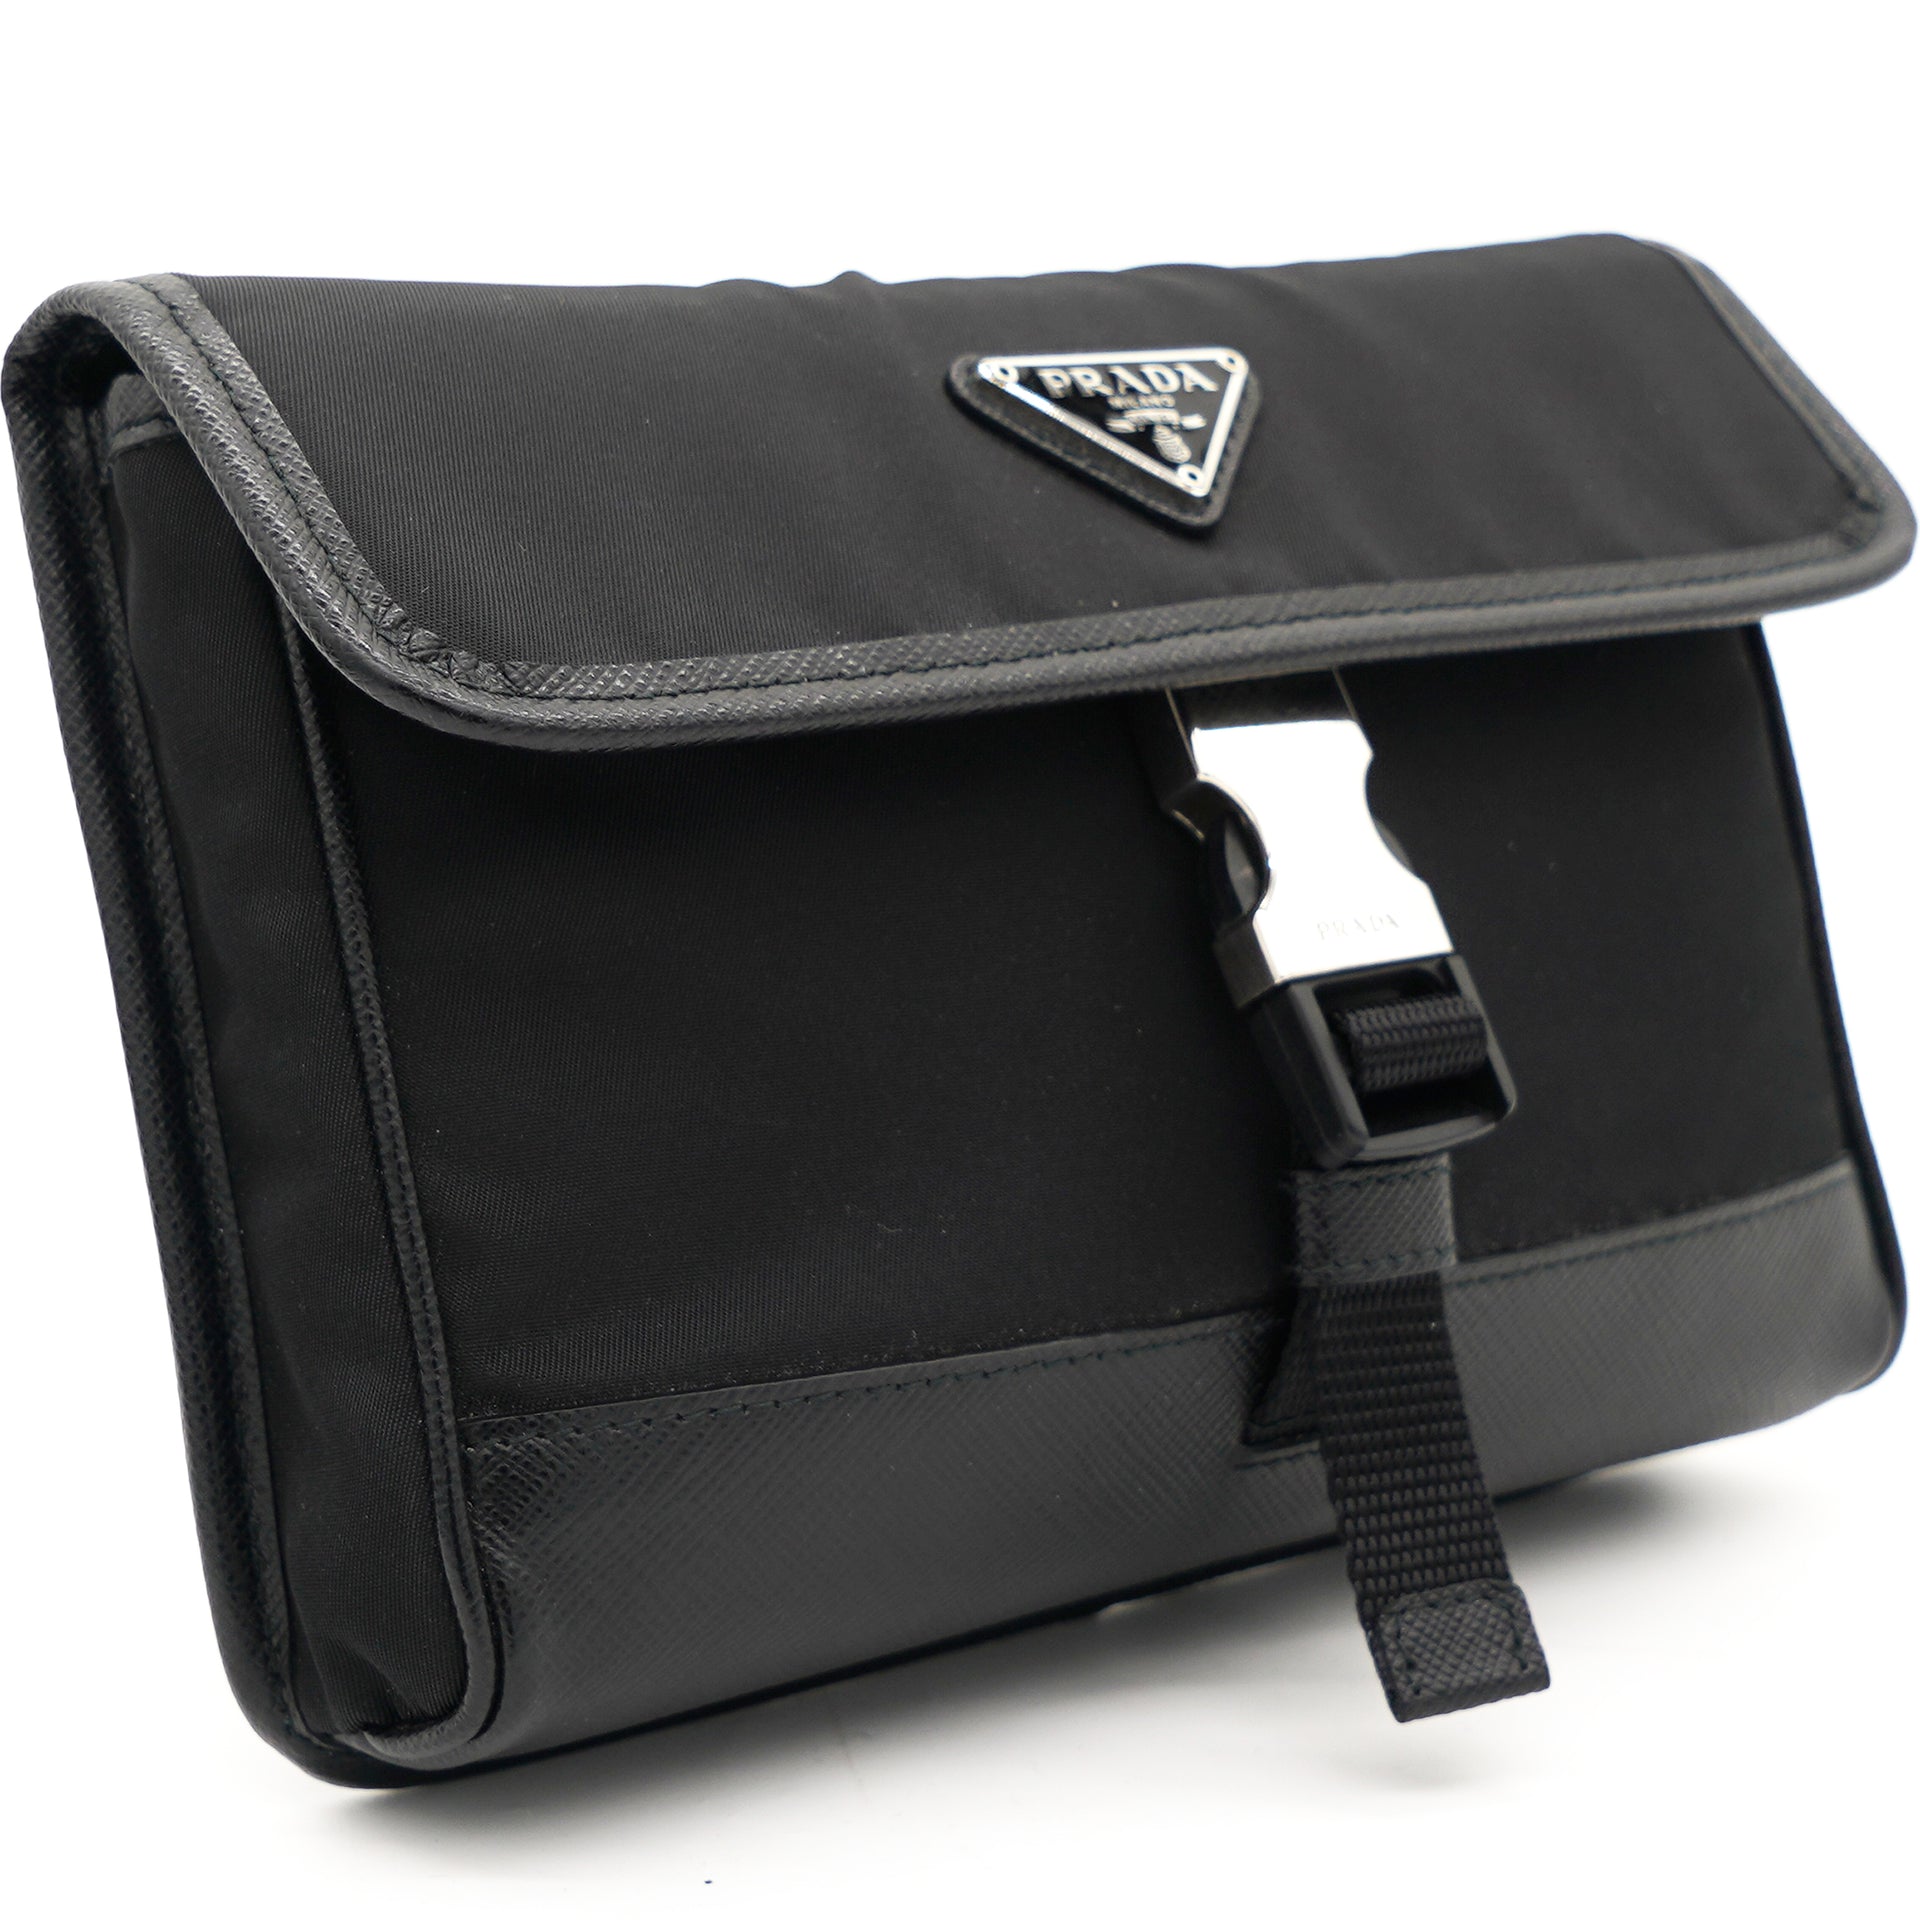 Re-Nylon and Saffiano Leather Smartphone Case